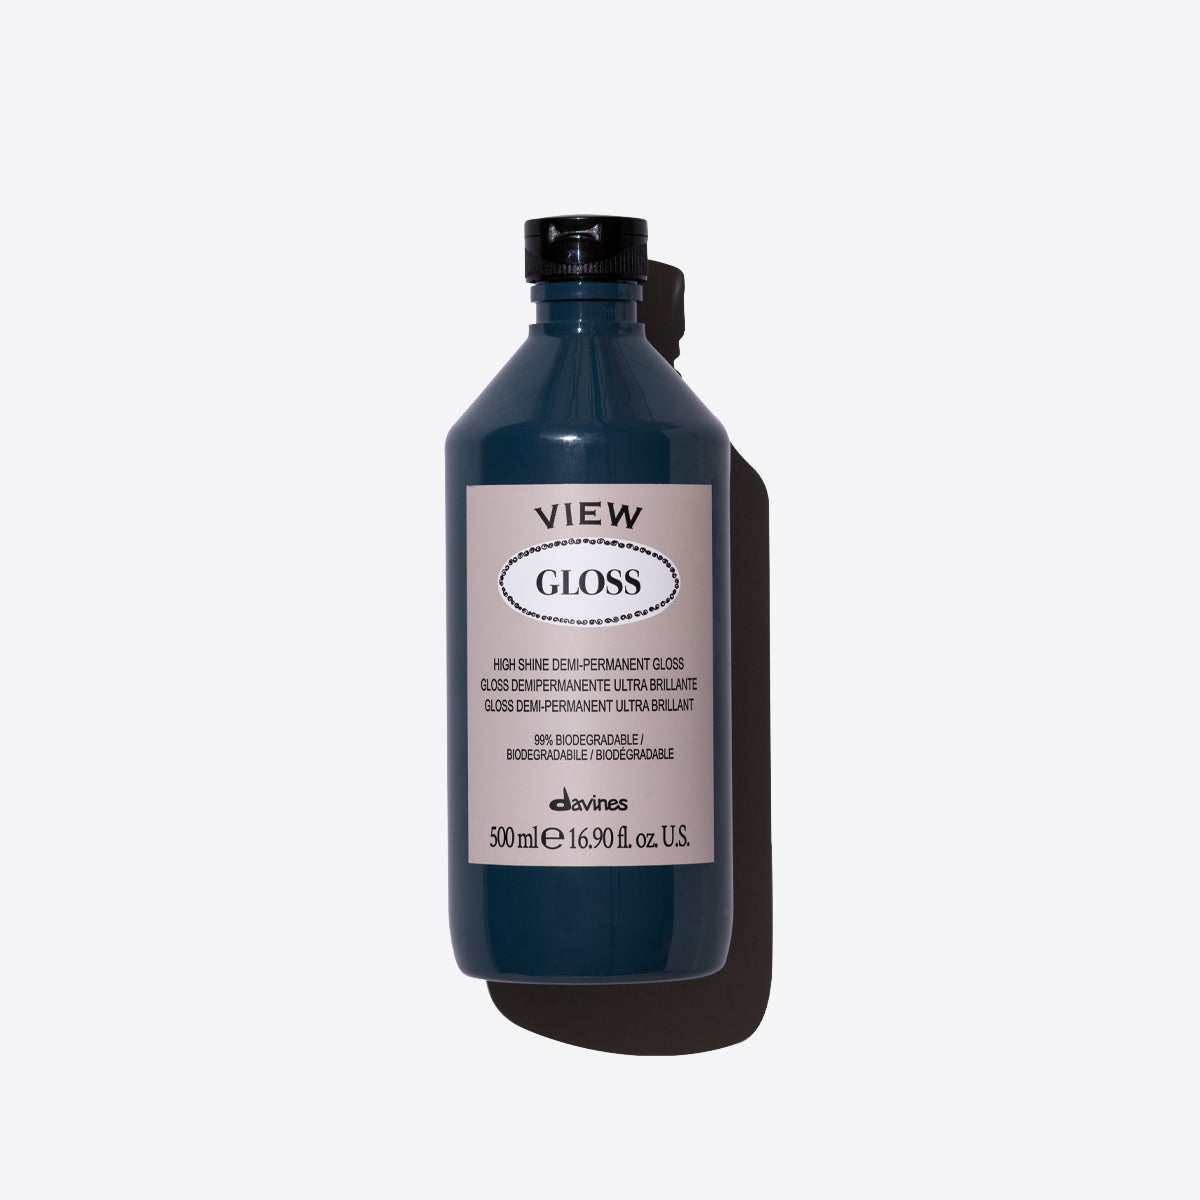 Gloss 1  500 ml / 16,9 fl.oz.Davines
